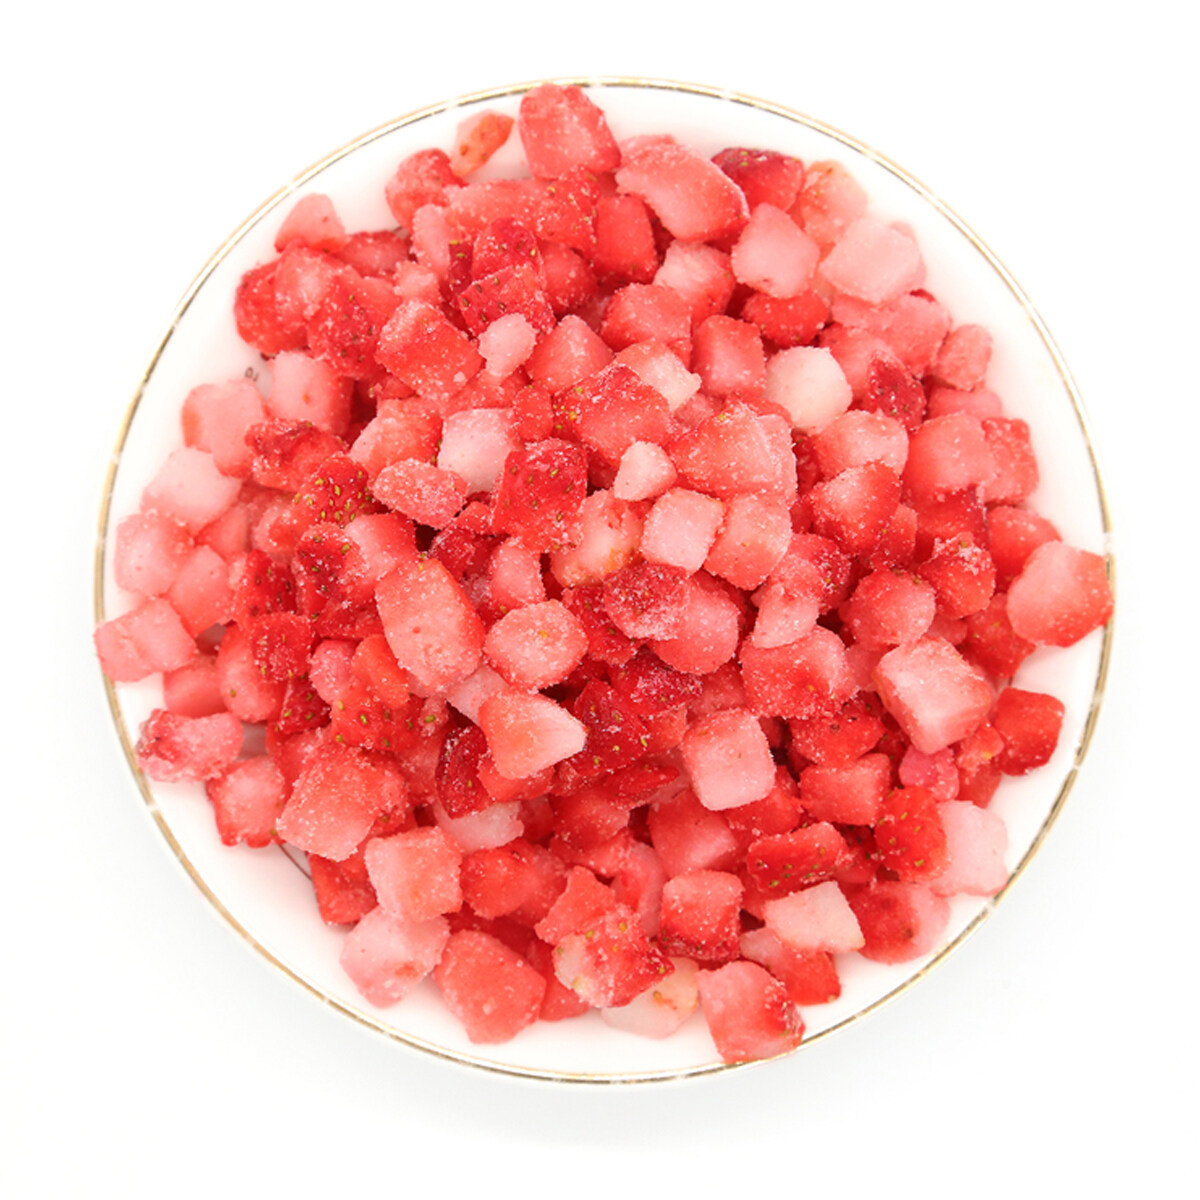 Strawberry de puerro congelado al por mayor, fresas congeladas OEM, fresas congeladas, fresas congeladas de alta calidad, dices de fresa congelados ODM